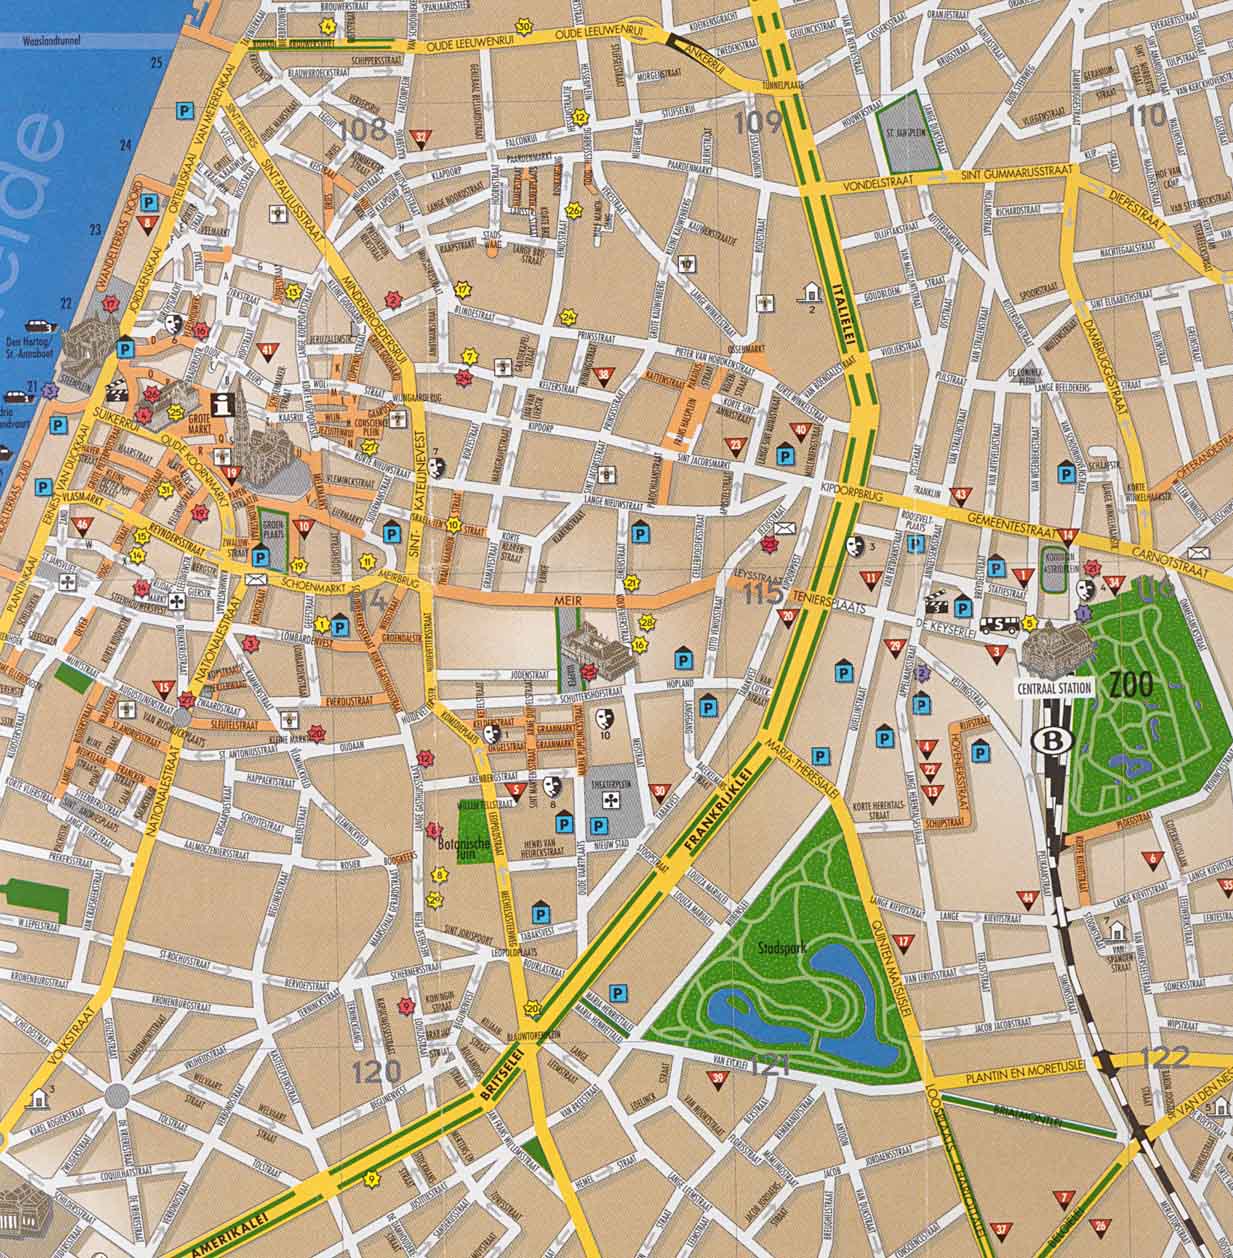 Antwerp touristique plan